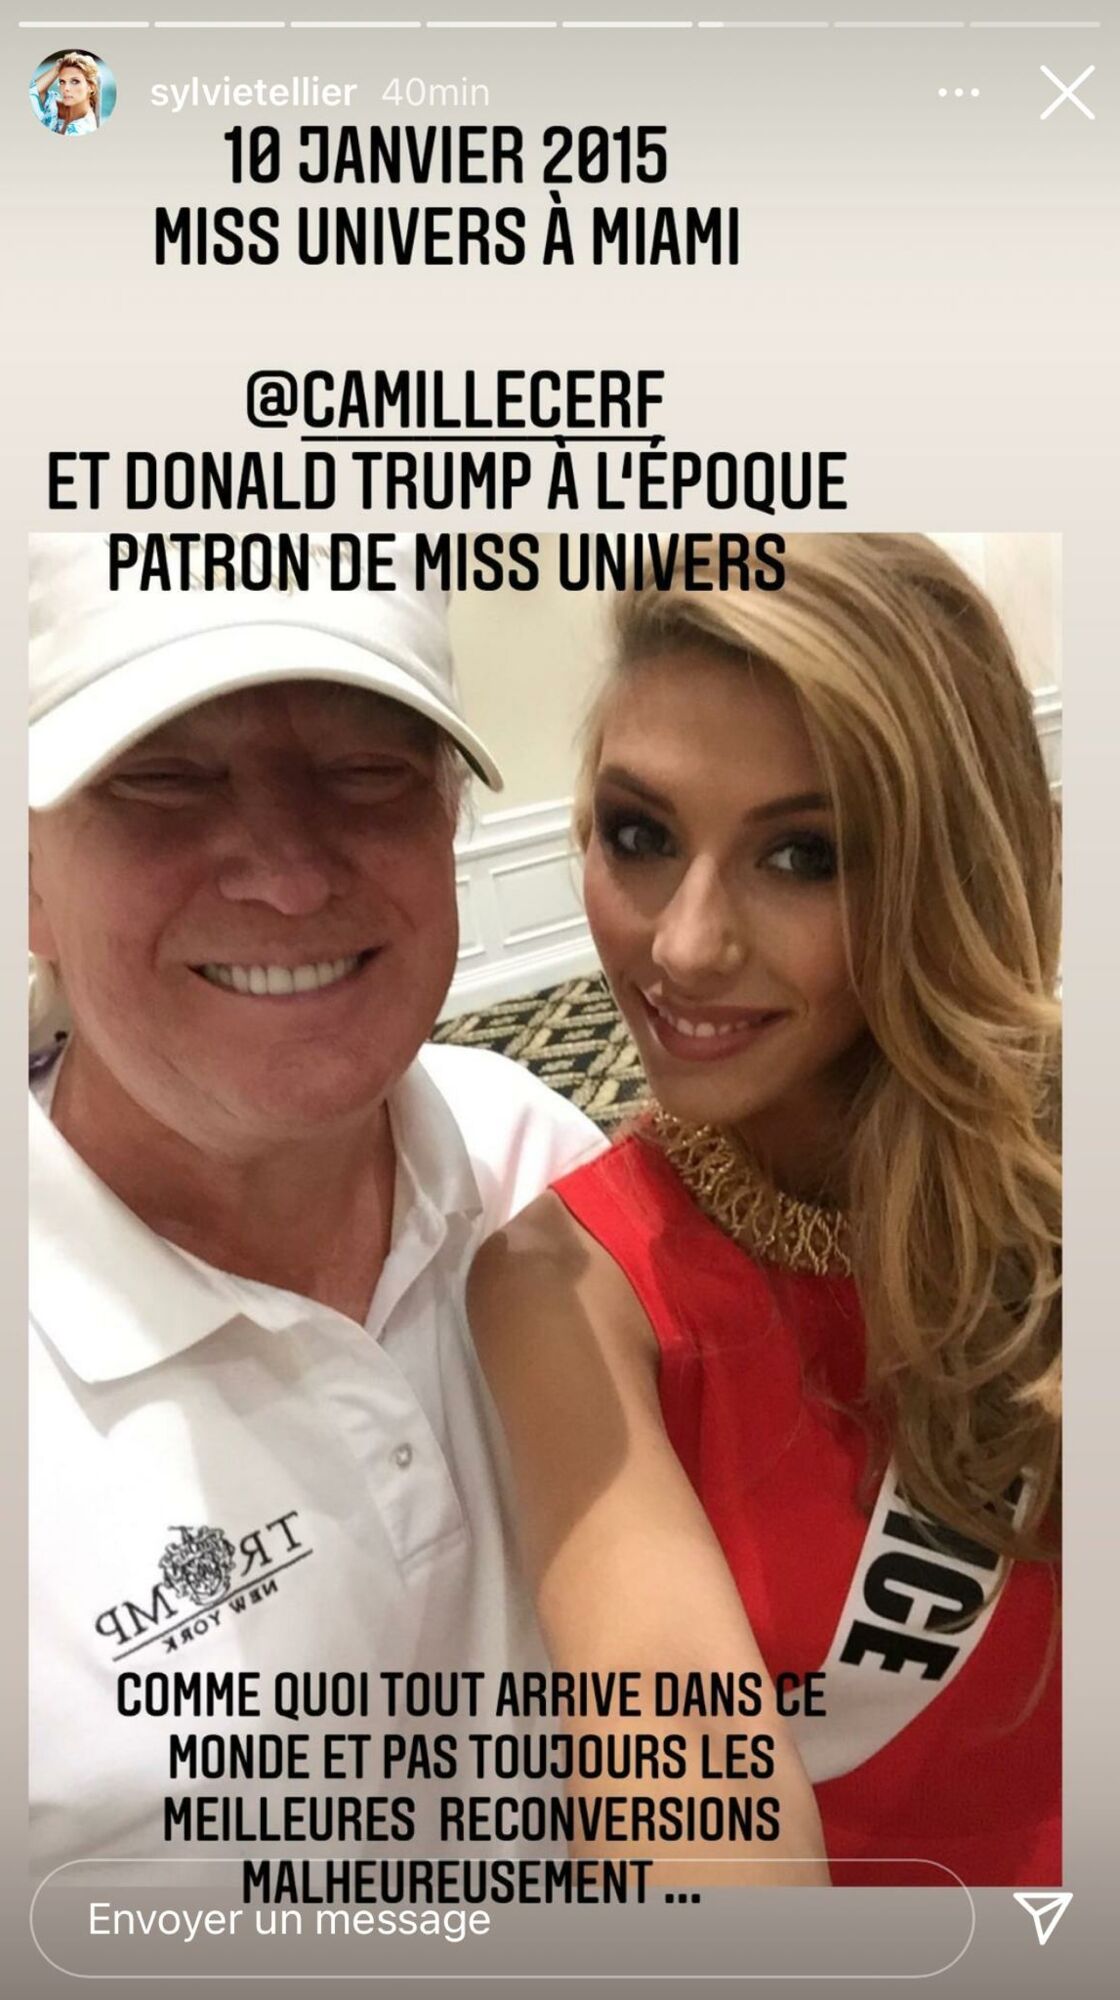 Camille Cerf prend la pose aux côtés de Donald Trump : Sylvie Tellier dévoile ce selfie embarrassant